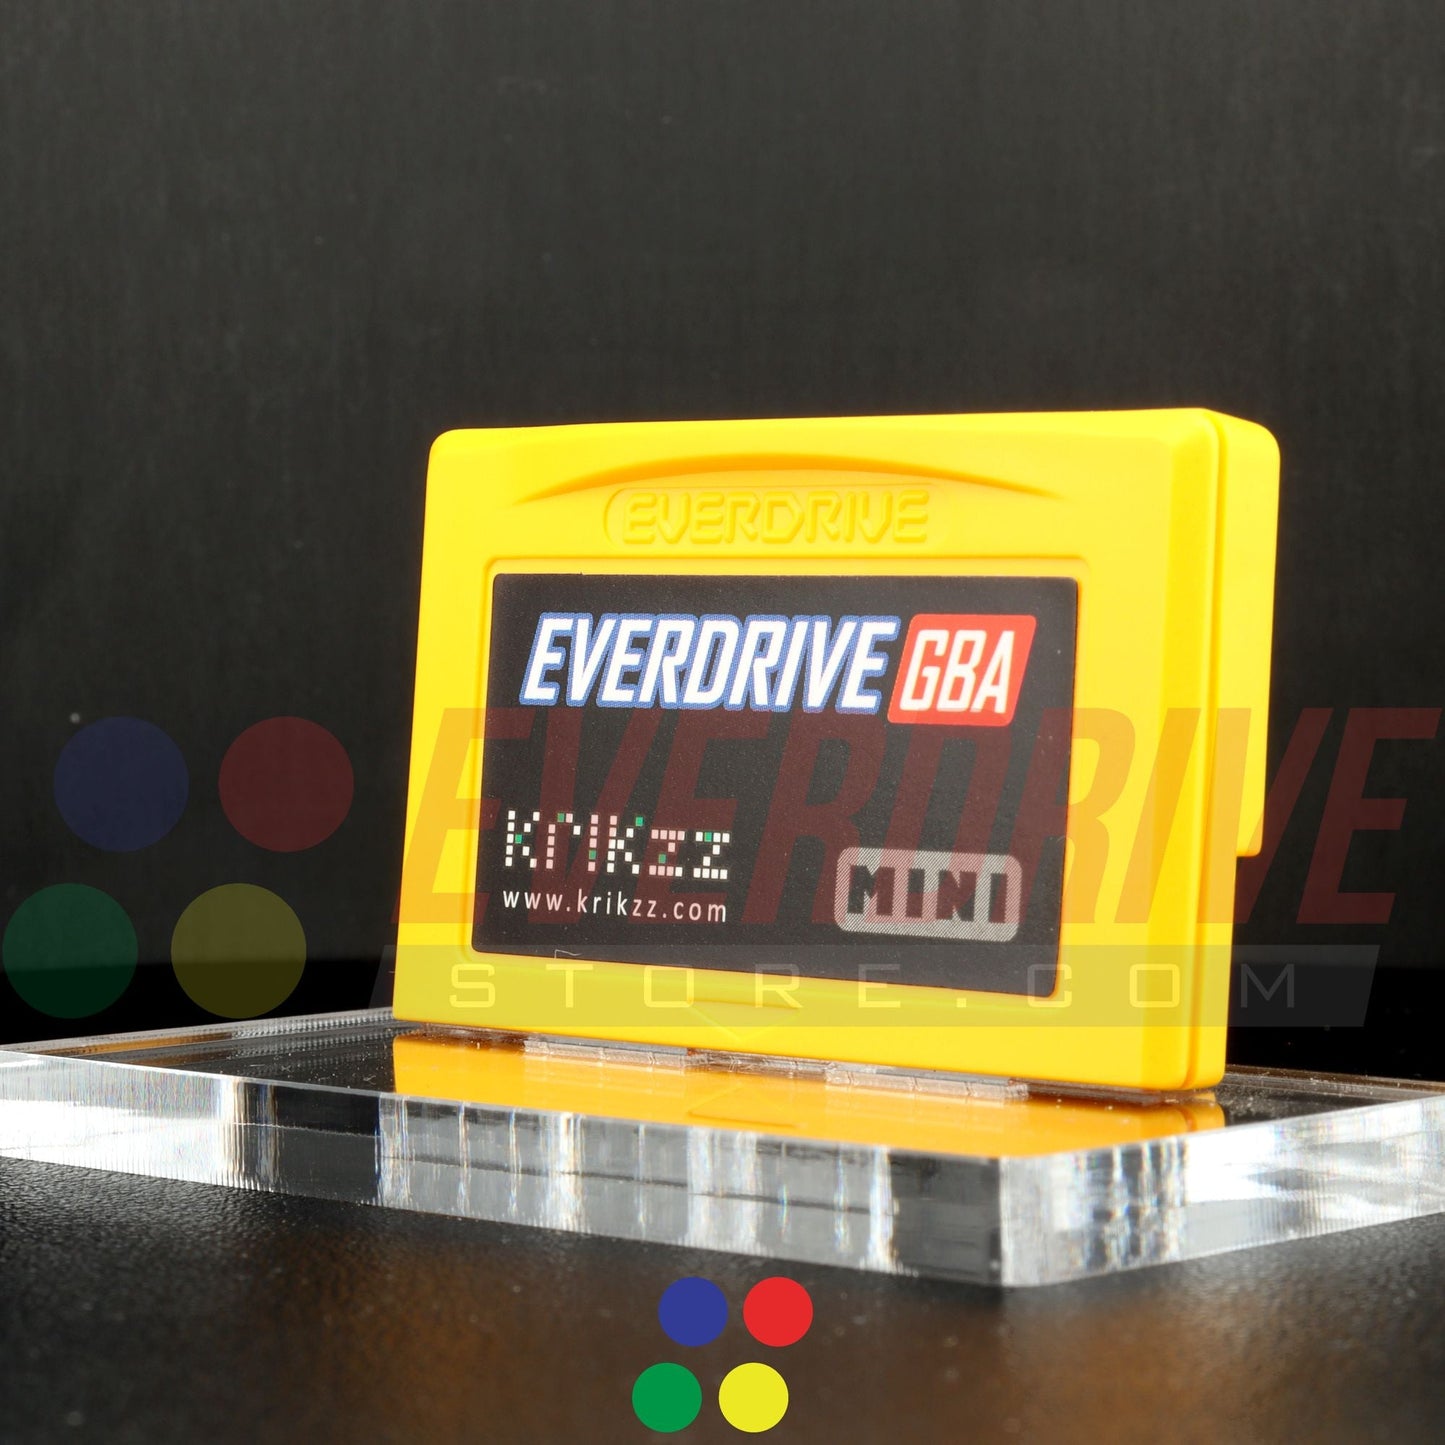 Everdrive GBA Mini - Yellow